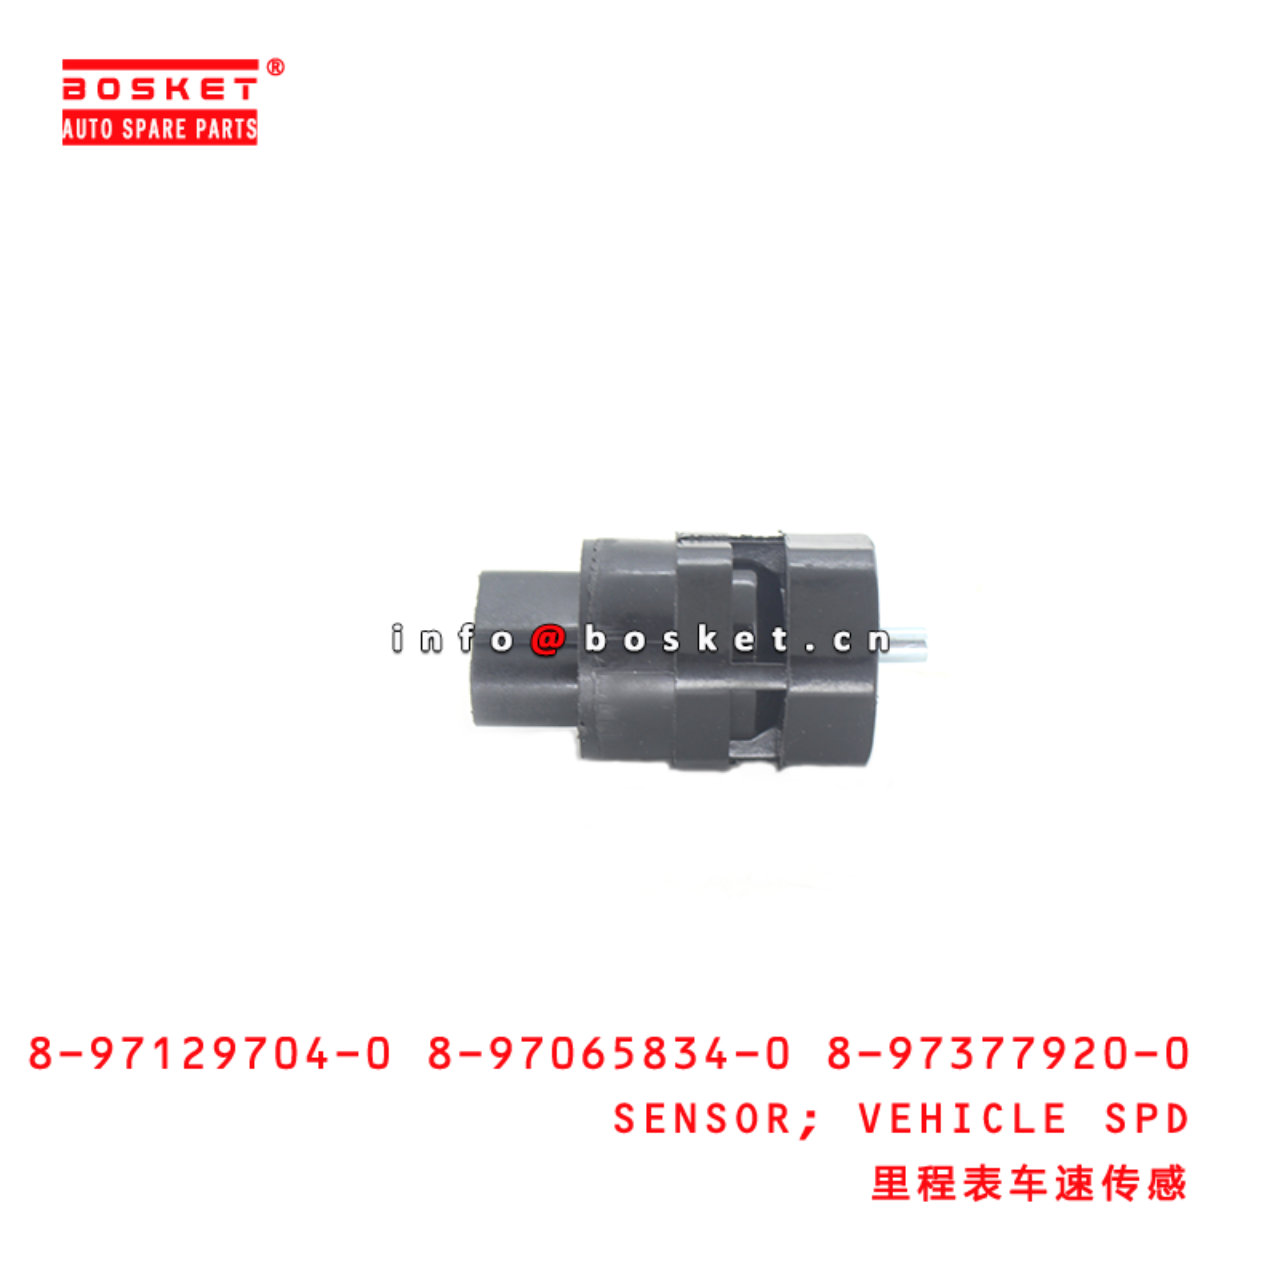 8-97129704-0 8-97065834-0 8-97377920-0 Vehicle Speed Sensor Suitable for ISUZU NKR55 4JB1